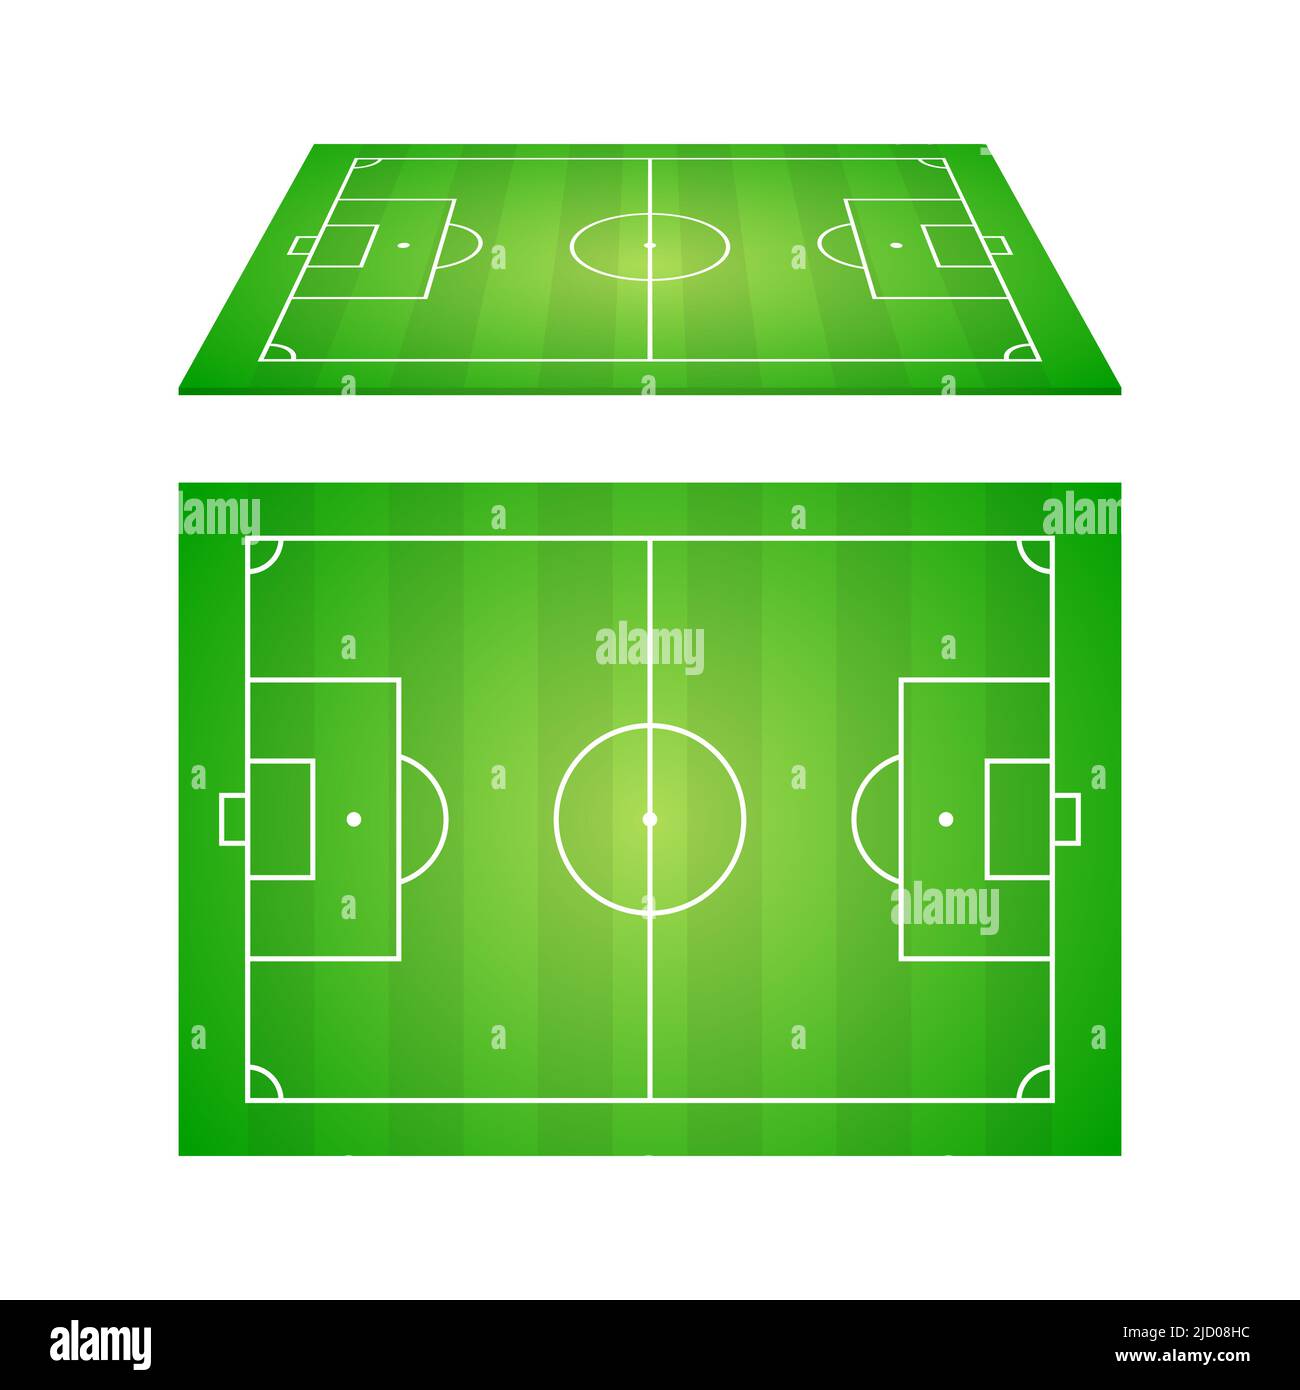 Soccer, European football. Vector illustration. Stock Vector